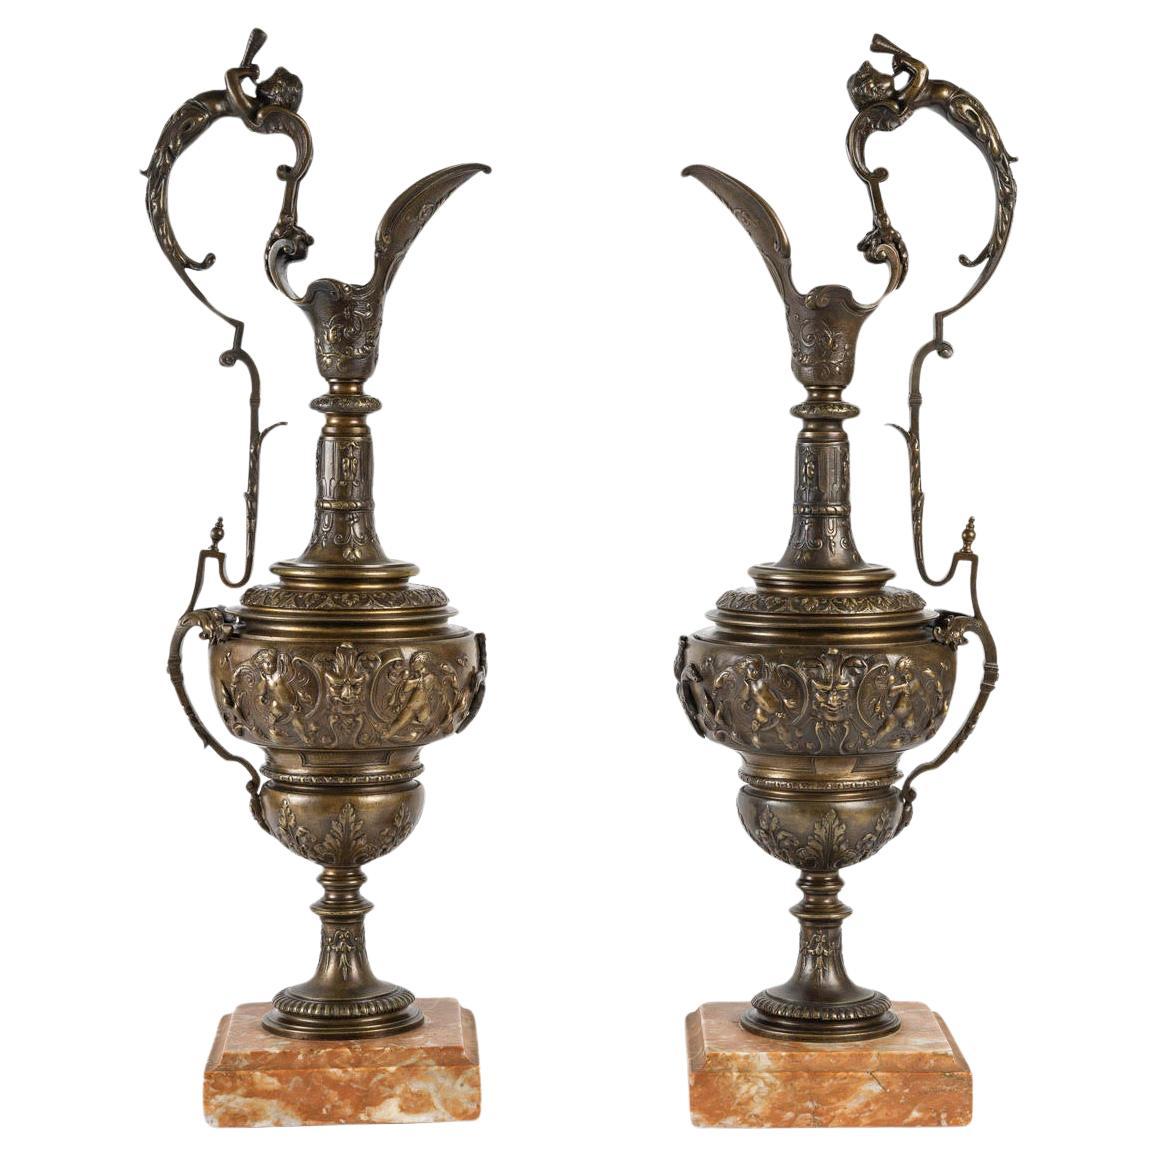 Paar Bronze-Ewers im Empire-Stil, spätes 19. oder frühes 20. Jahrhundert.